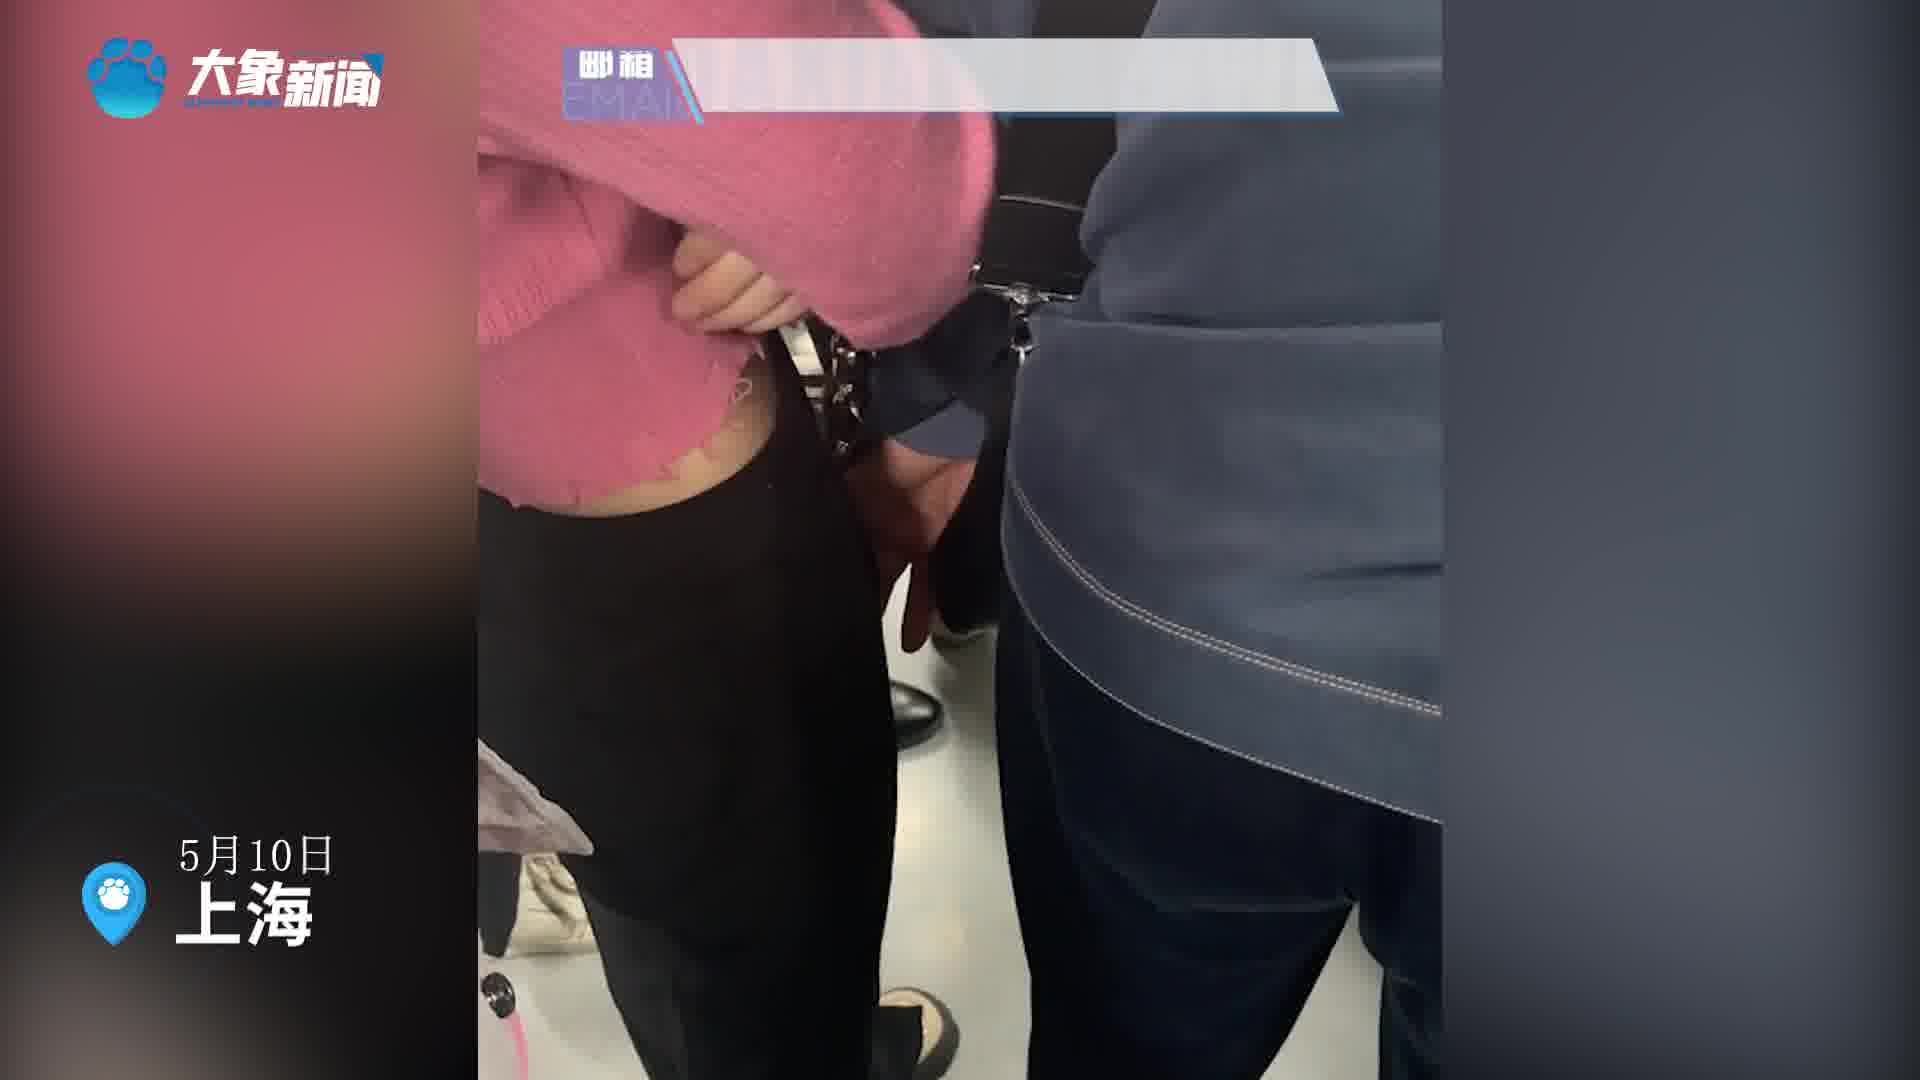 上海一男子地铁上摸女乘客隐私部位客服不方便电话报警可以发信息